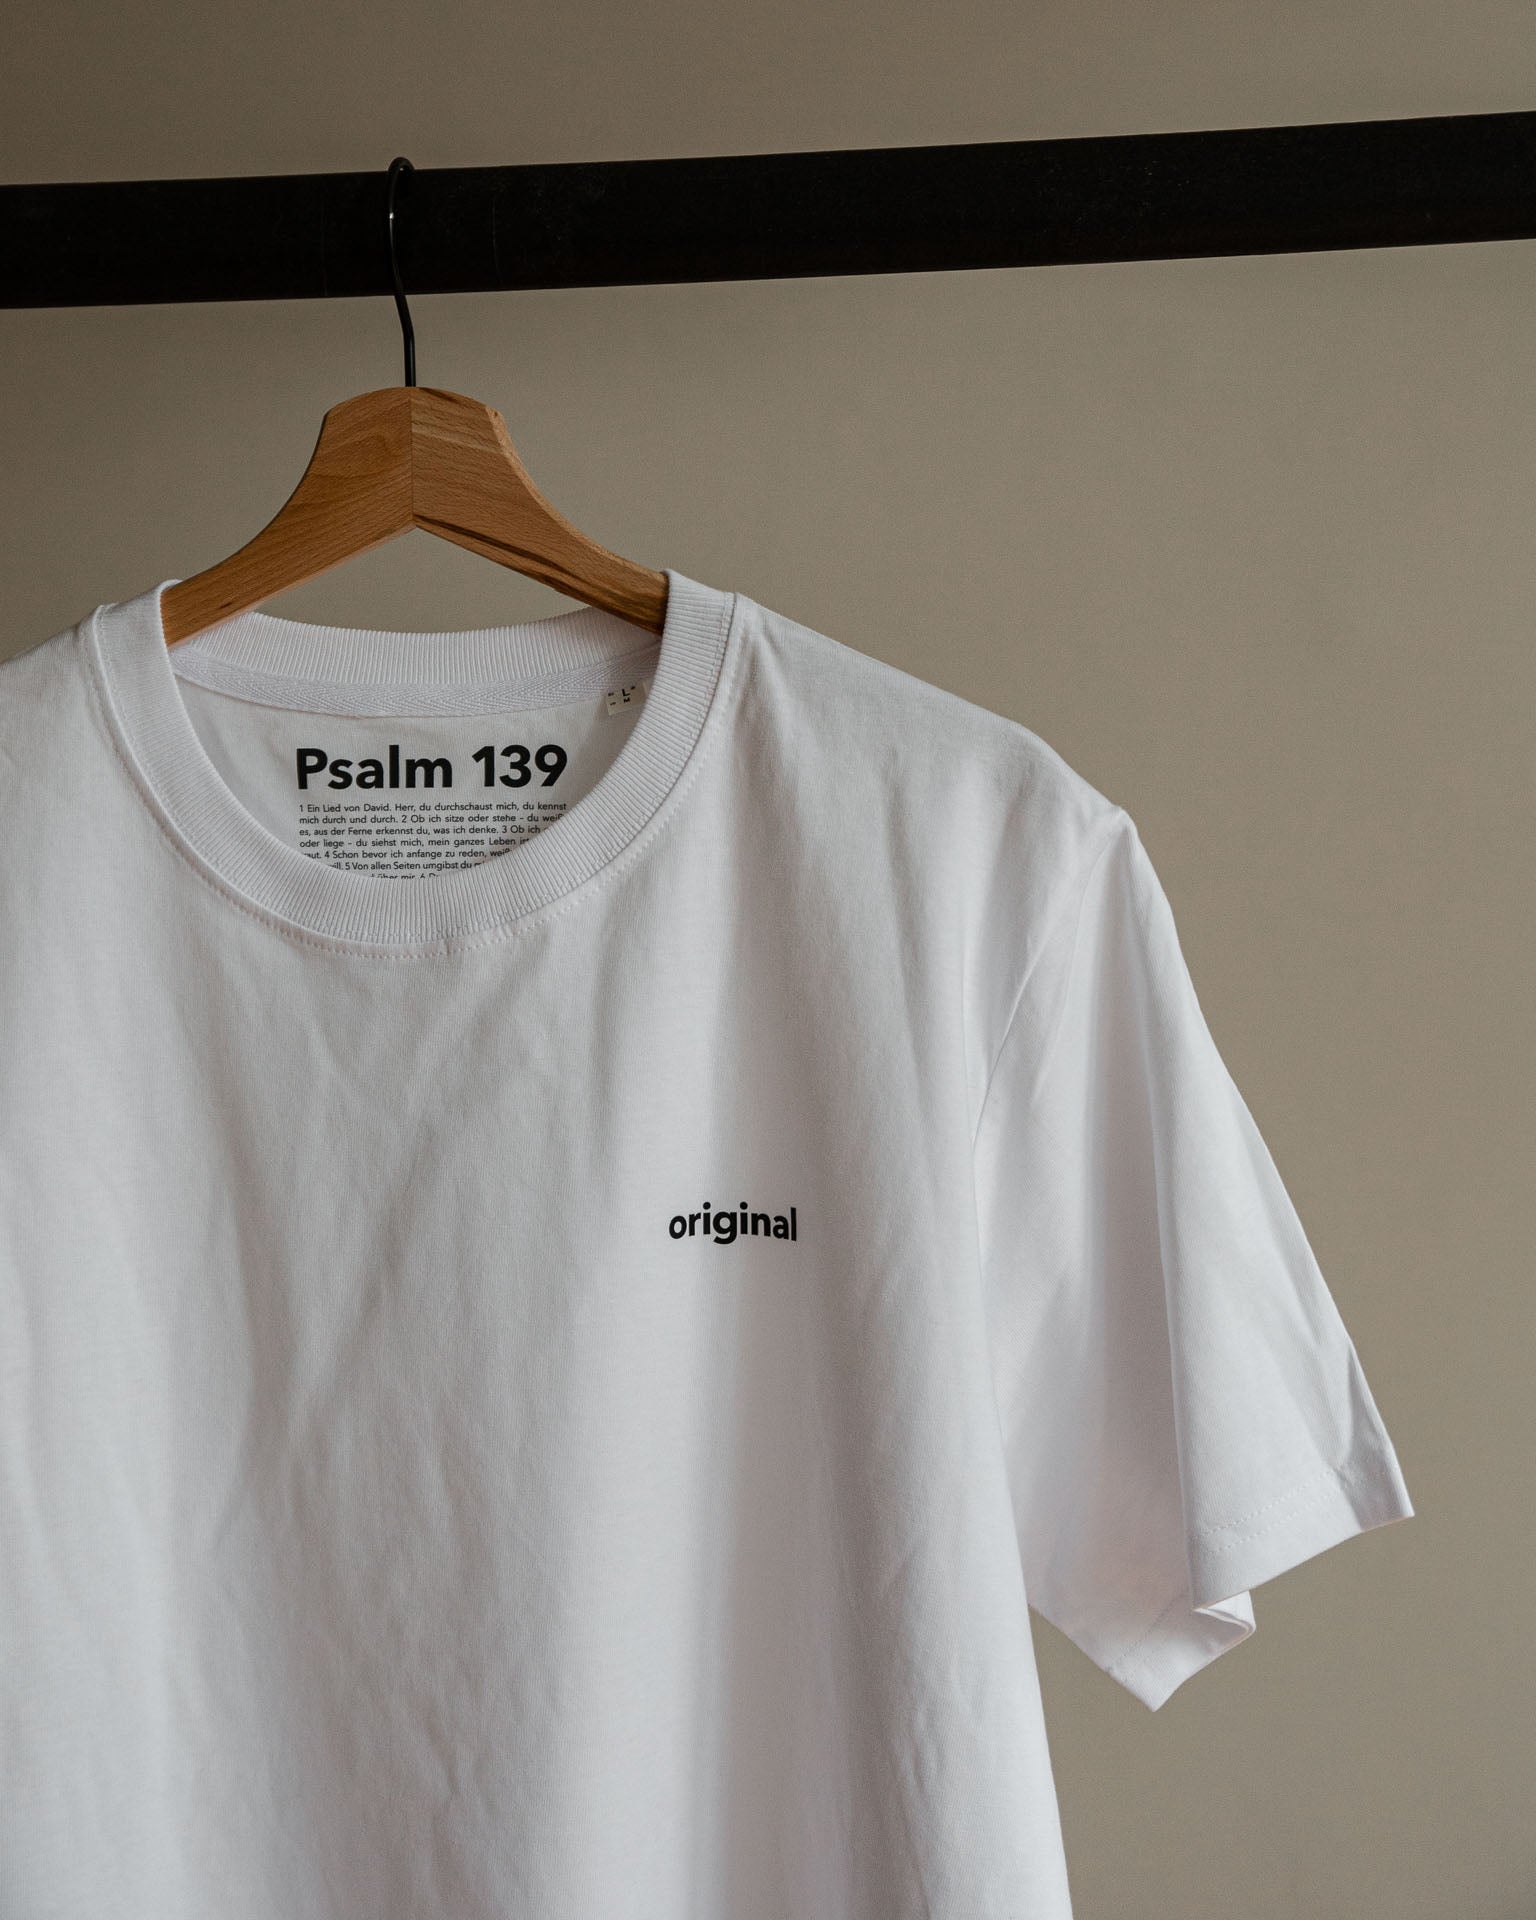 original / Tshirt / Psalm 139